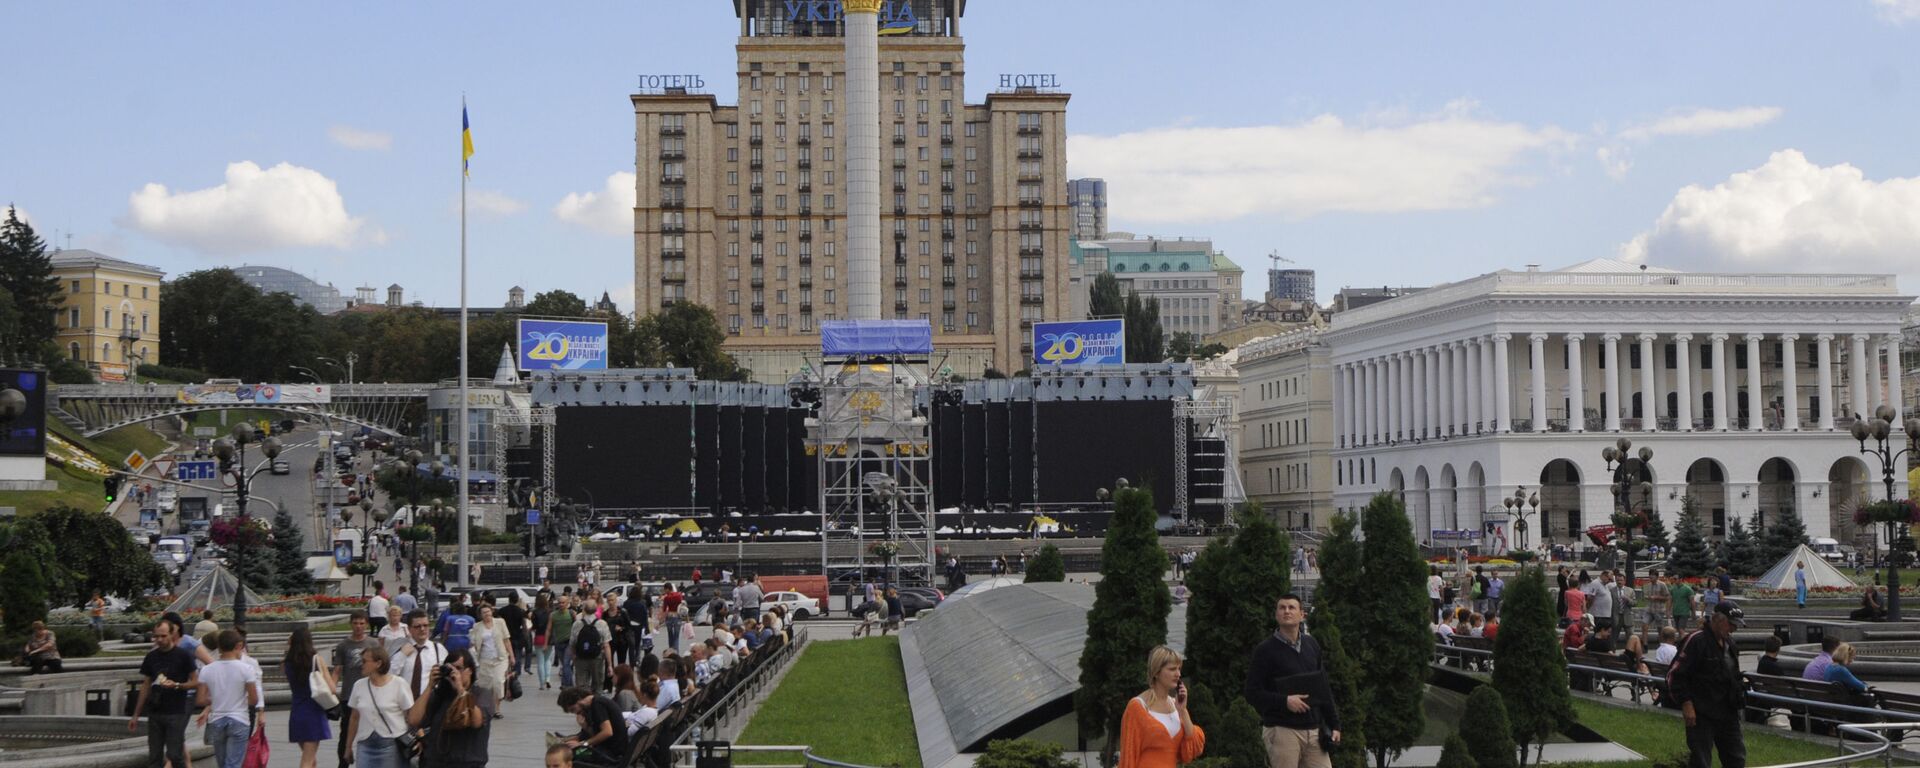 Вид на главную площадь Киева, Украина, понедельник, 22 августа 2011 г. Киев - один из четырех городов Украины, принимающих футбольный турнир Евро-2012 - Sputnik Абхазия, 1920, 24.08.2021